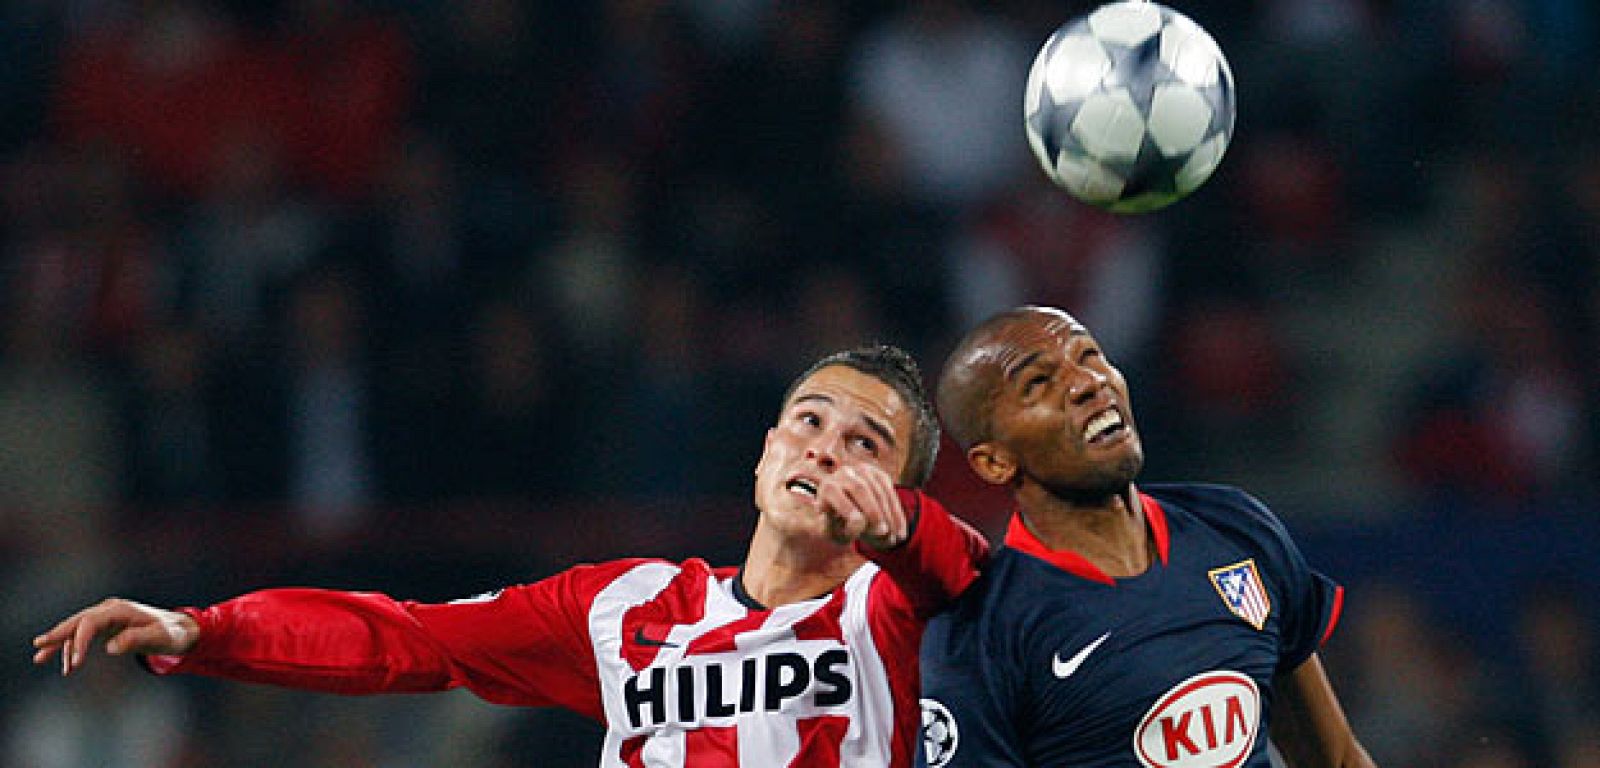 El equipo holandés del PSV quiere jugar en el Calderón a pesar de la sanción de la UEFA.